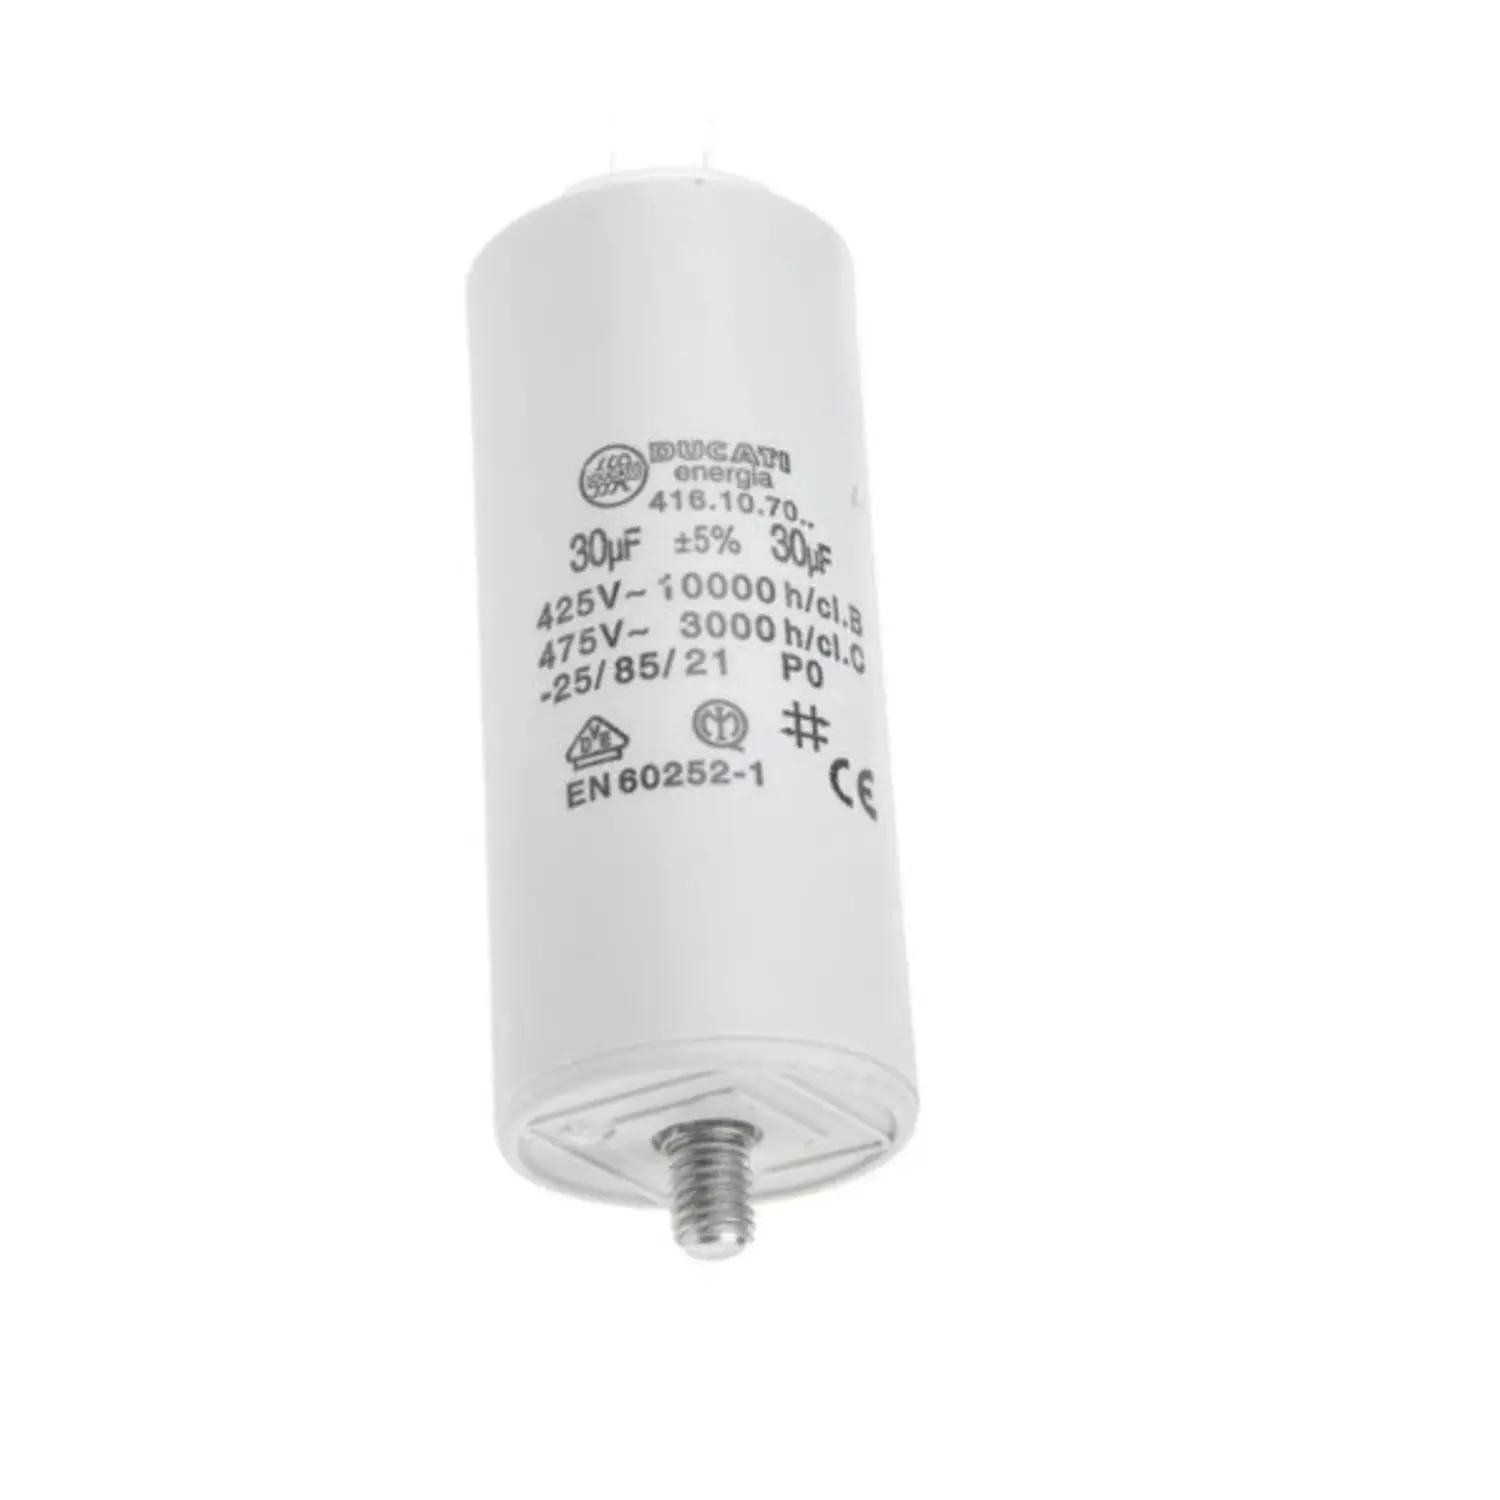 immagine del prodotto condensatore di spunto 2 poli con terra CE bianco 450 volt 30 uf wnt 97998